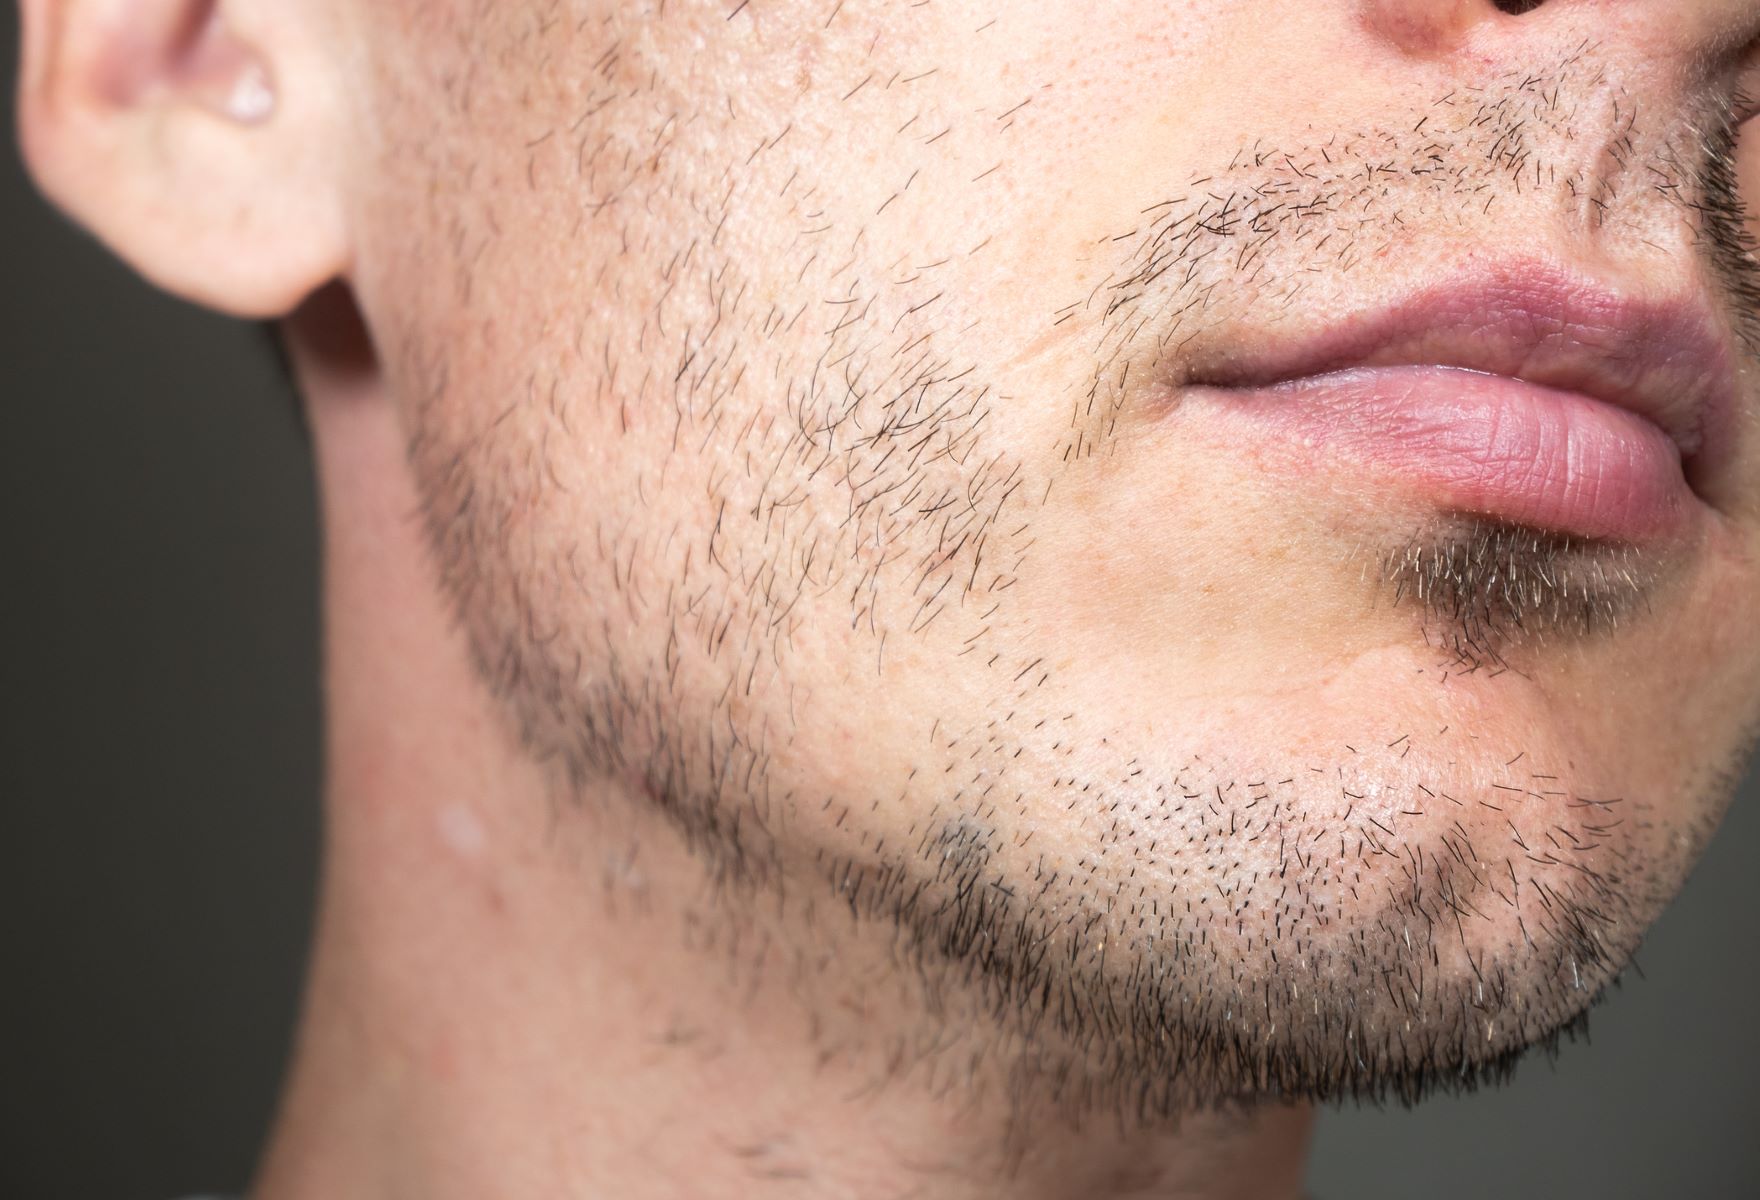 Beard hair loss